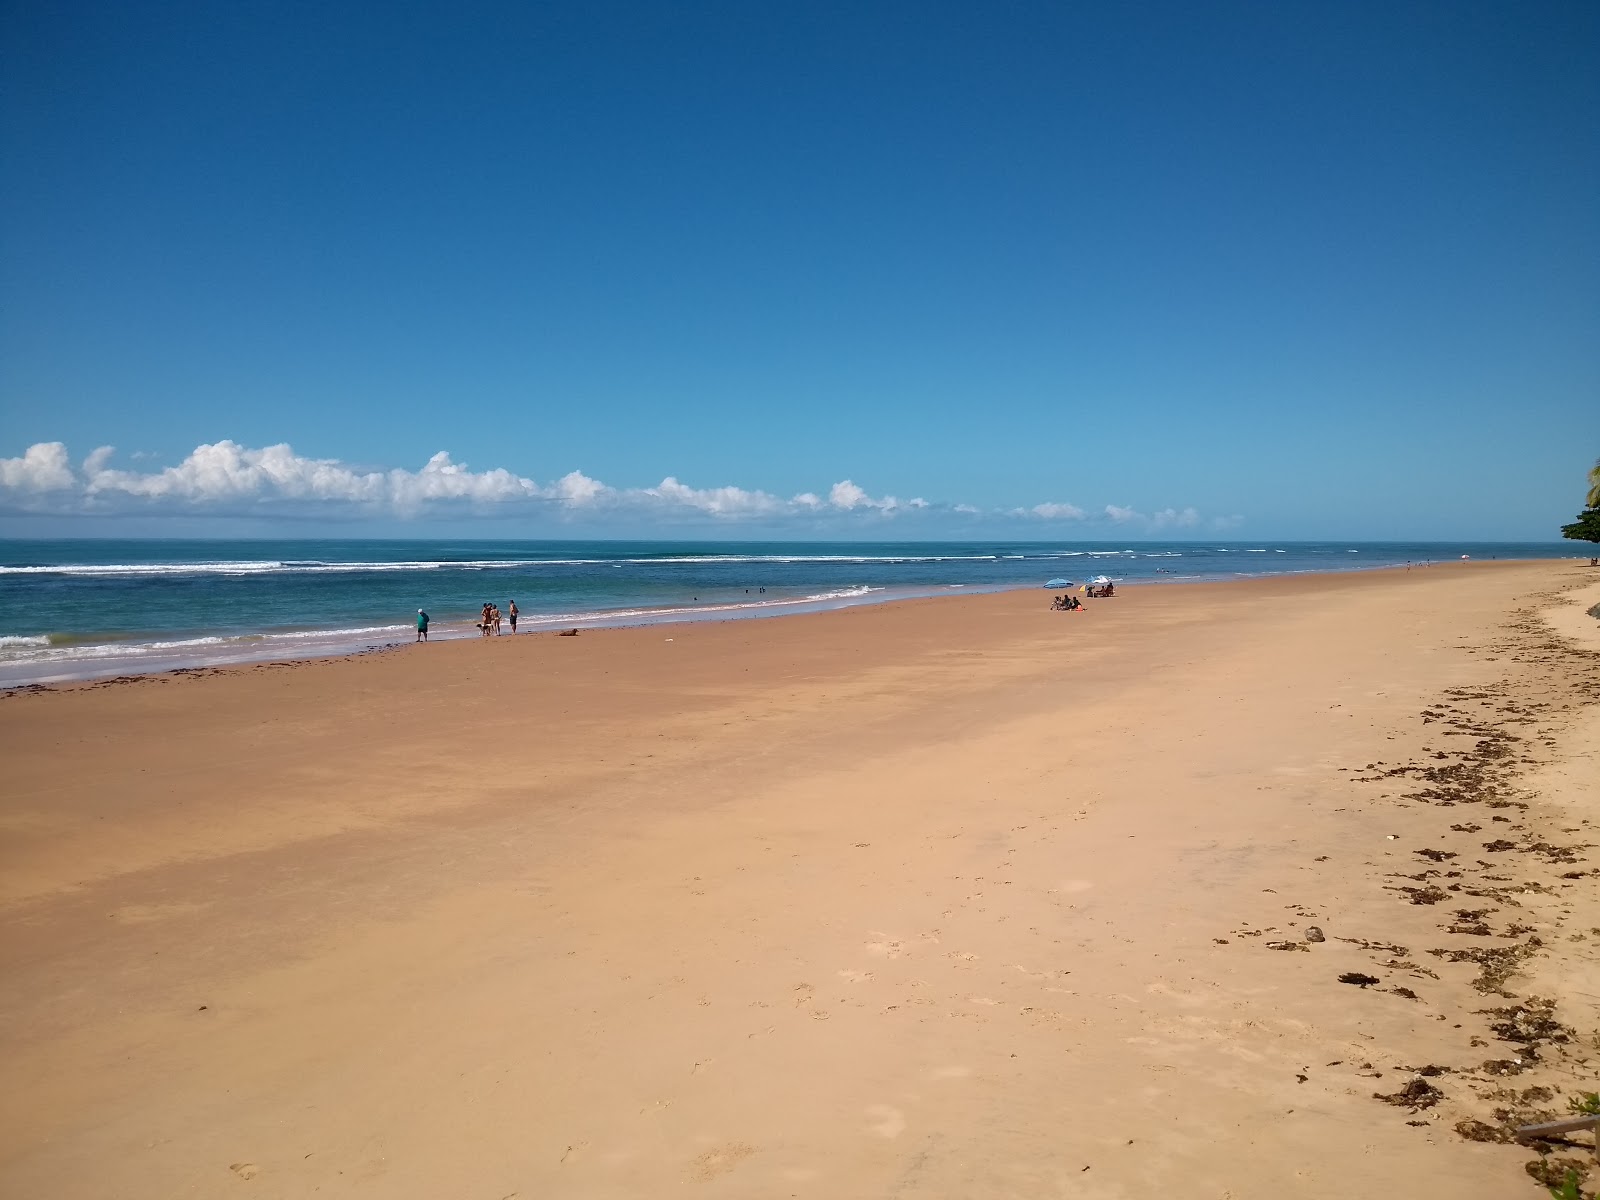 Algodoes Plajı'in fotoğrafı parlak ince kum yüzey ile